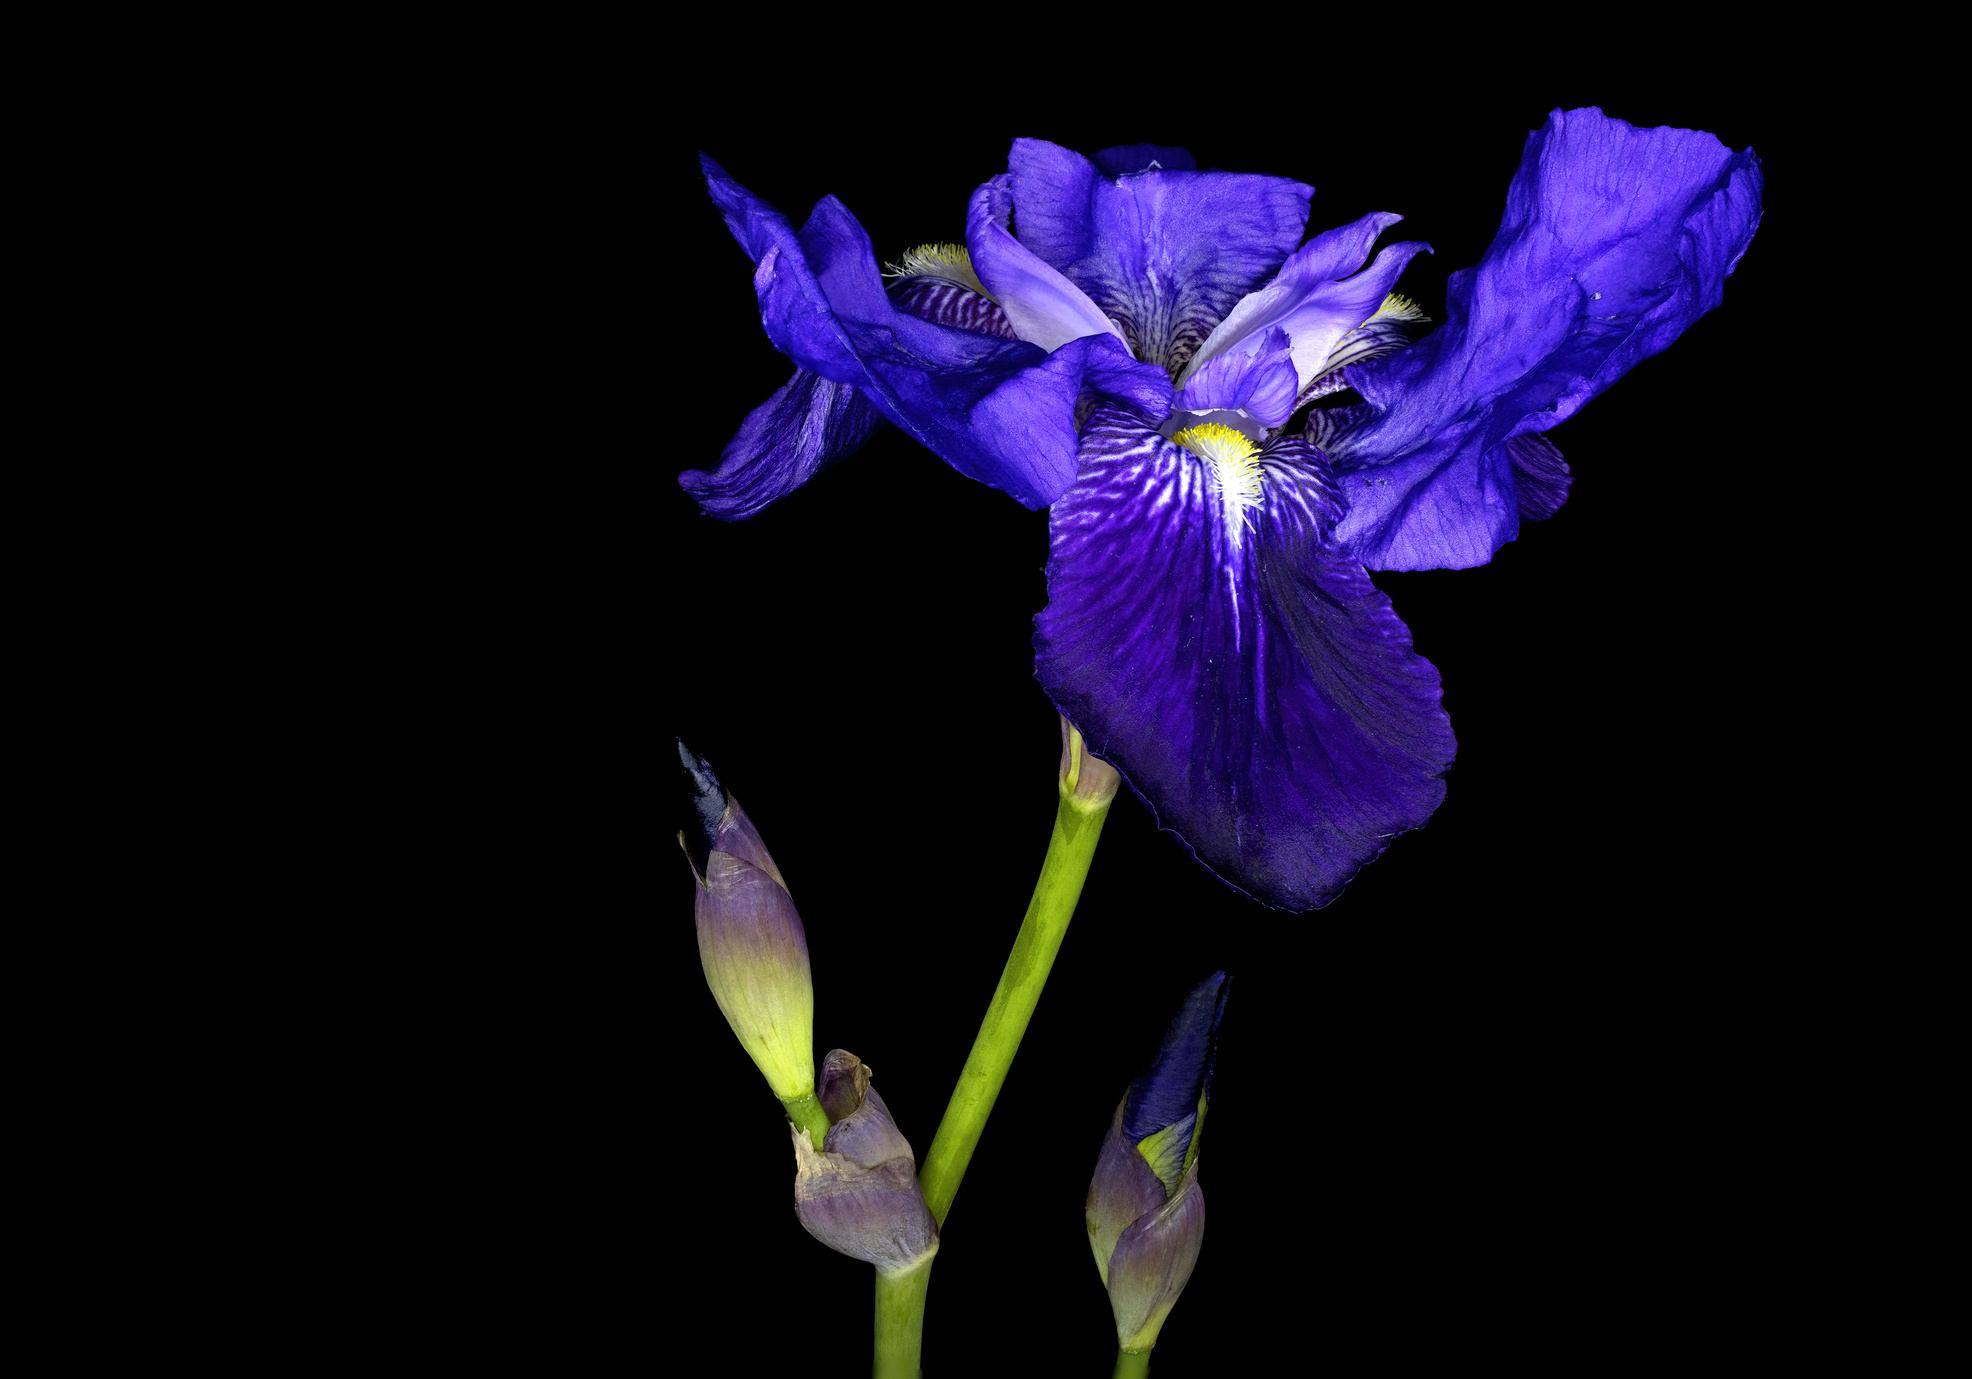 Iris sibirica, commonly known as Siberian iris